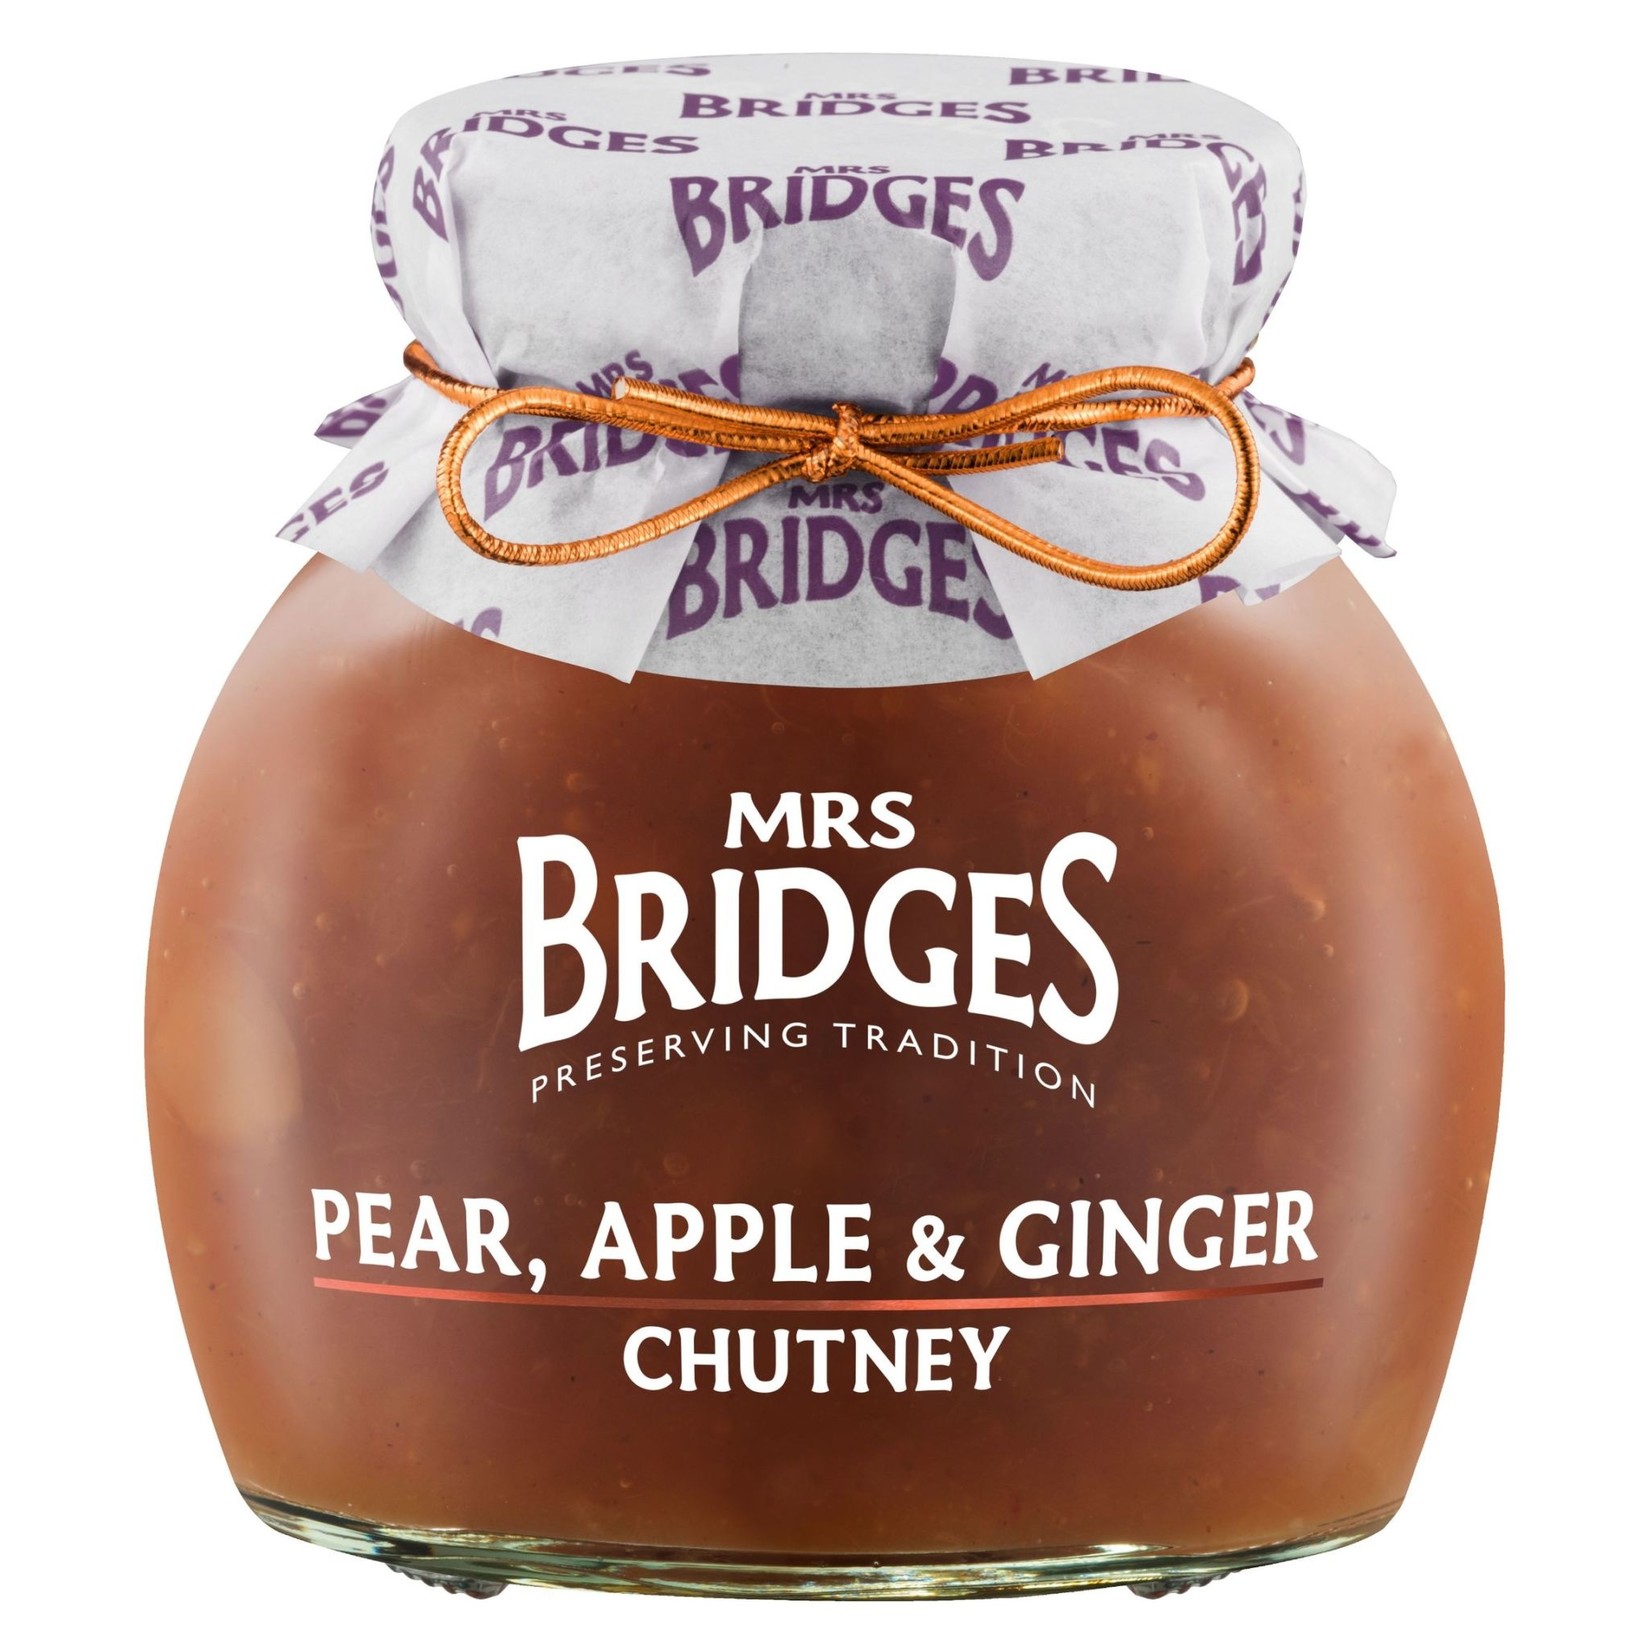 MRS BRIDGES MRS BRIDGES Pear, Apple & Ginger Chutney 300g